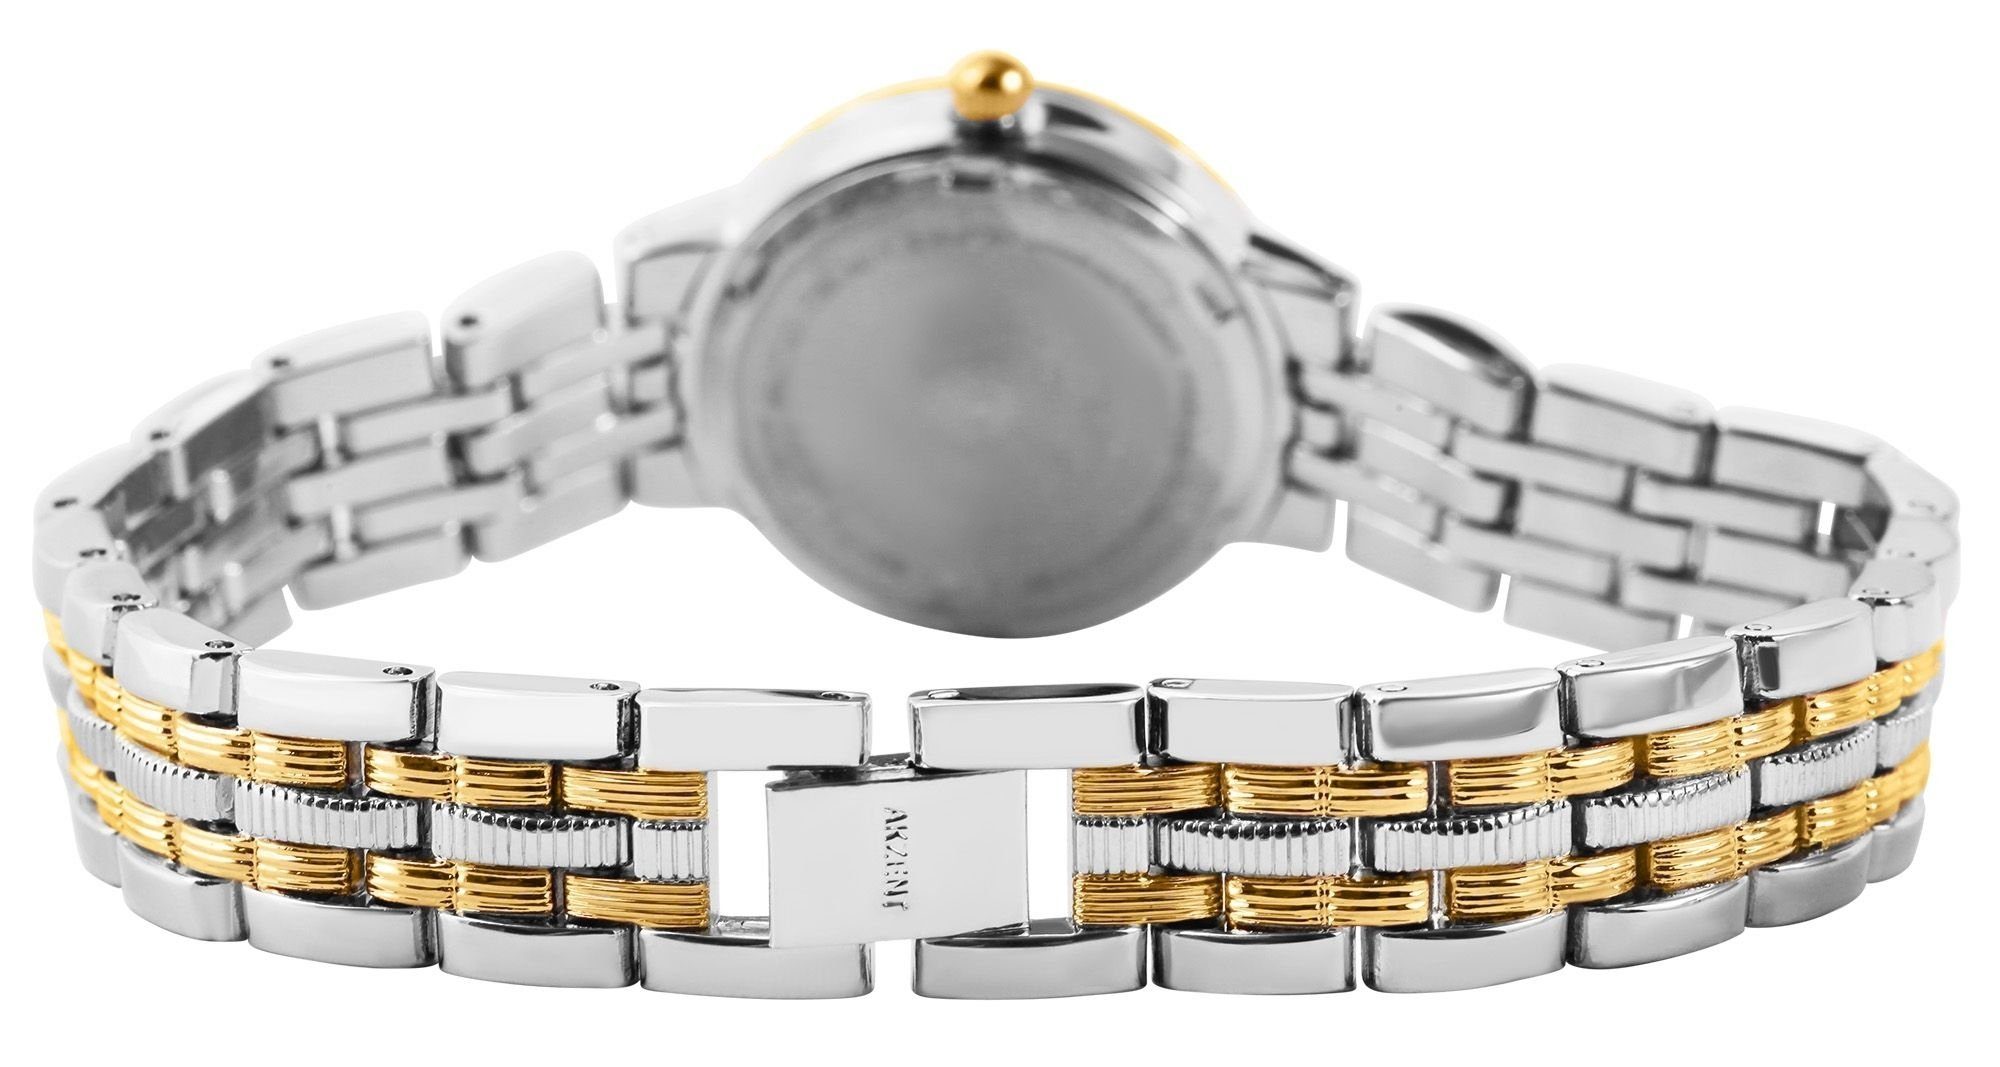 AKZENT Quarzuhr Bigum silberfarbig1 Armbanduhr mit Damen Metall aus Gliederband